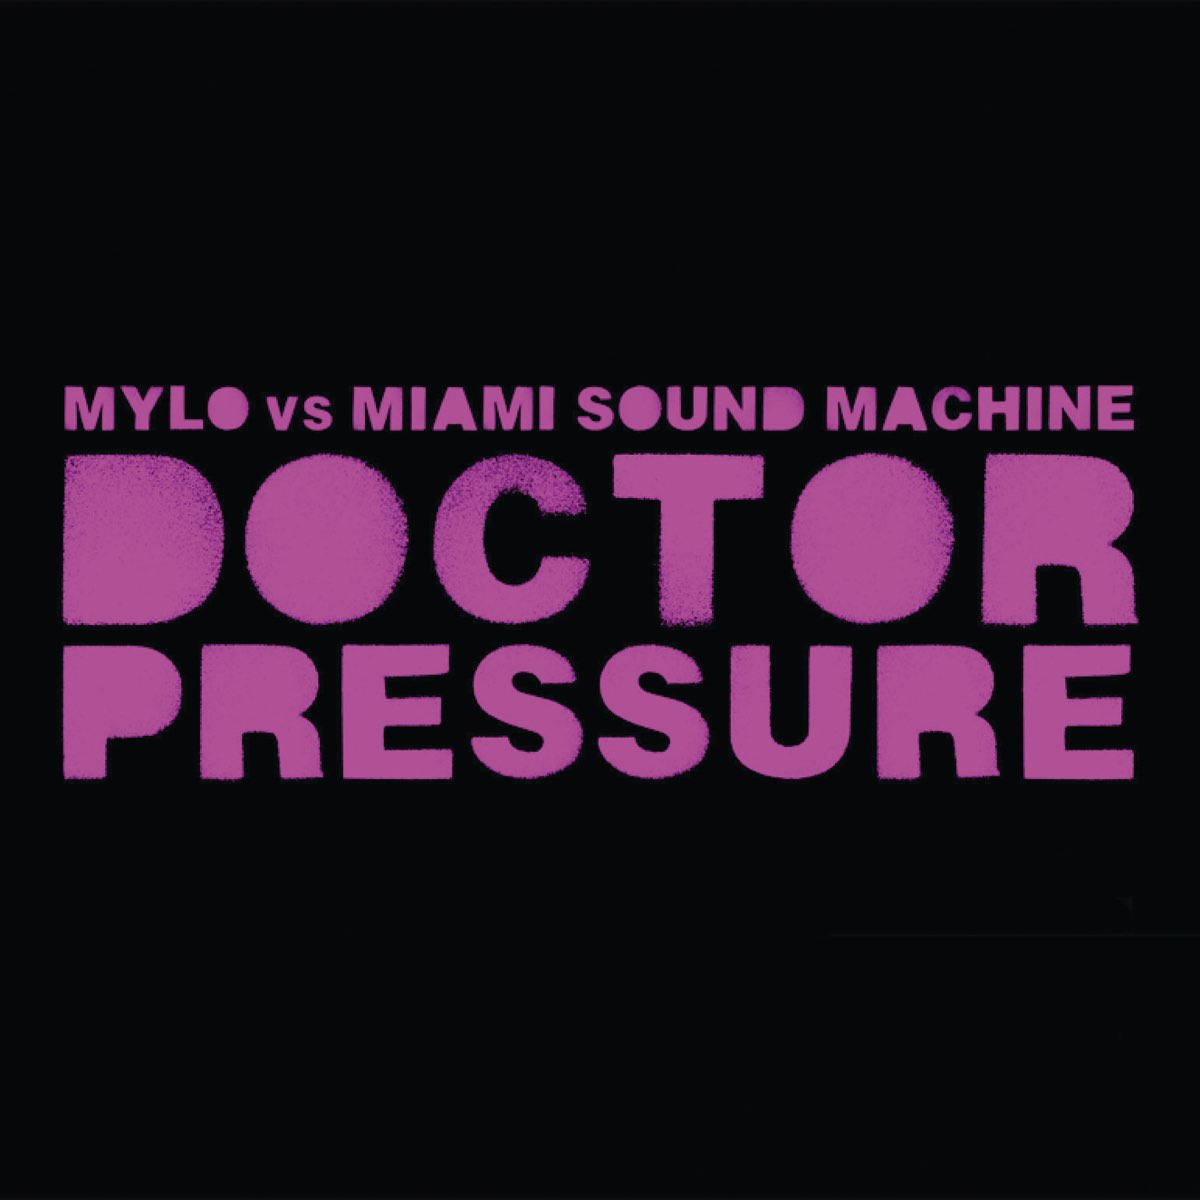 Doctor Pressure (Mylo vs. Miami Sound Machine) - Single by Mylo & Gloria  Estefan & Miami Sound Machine on Apple Music